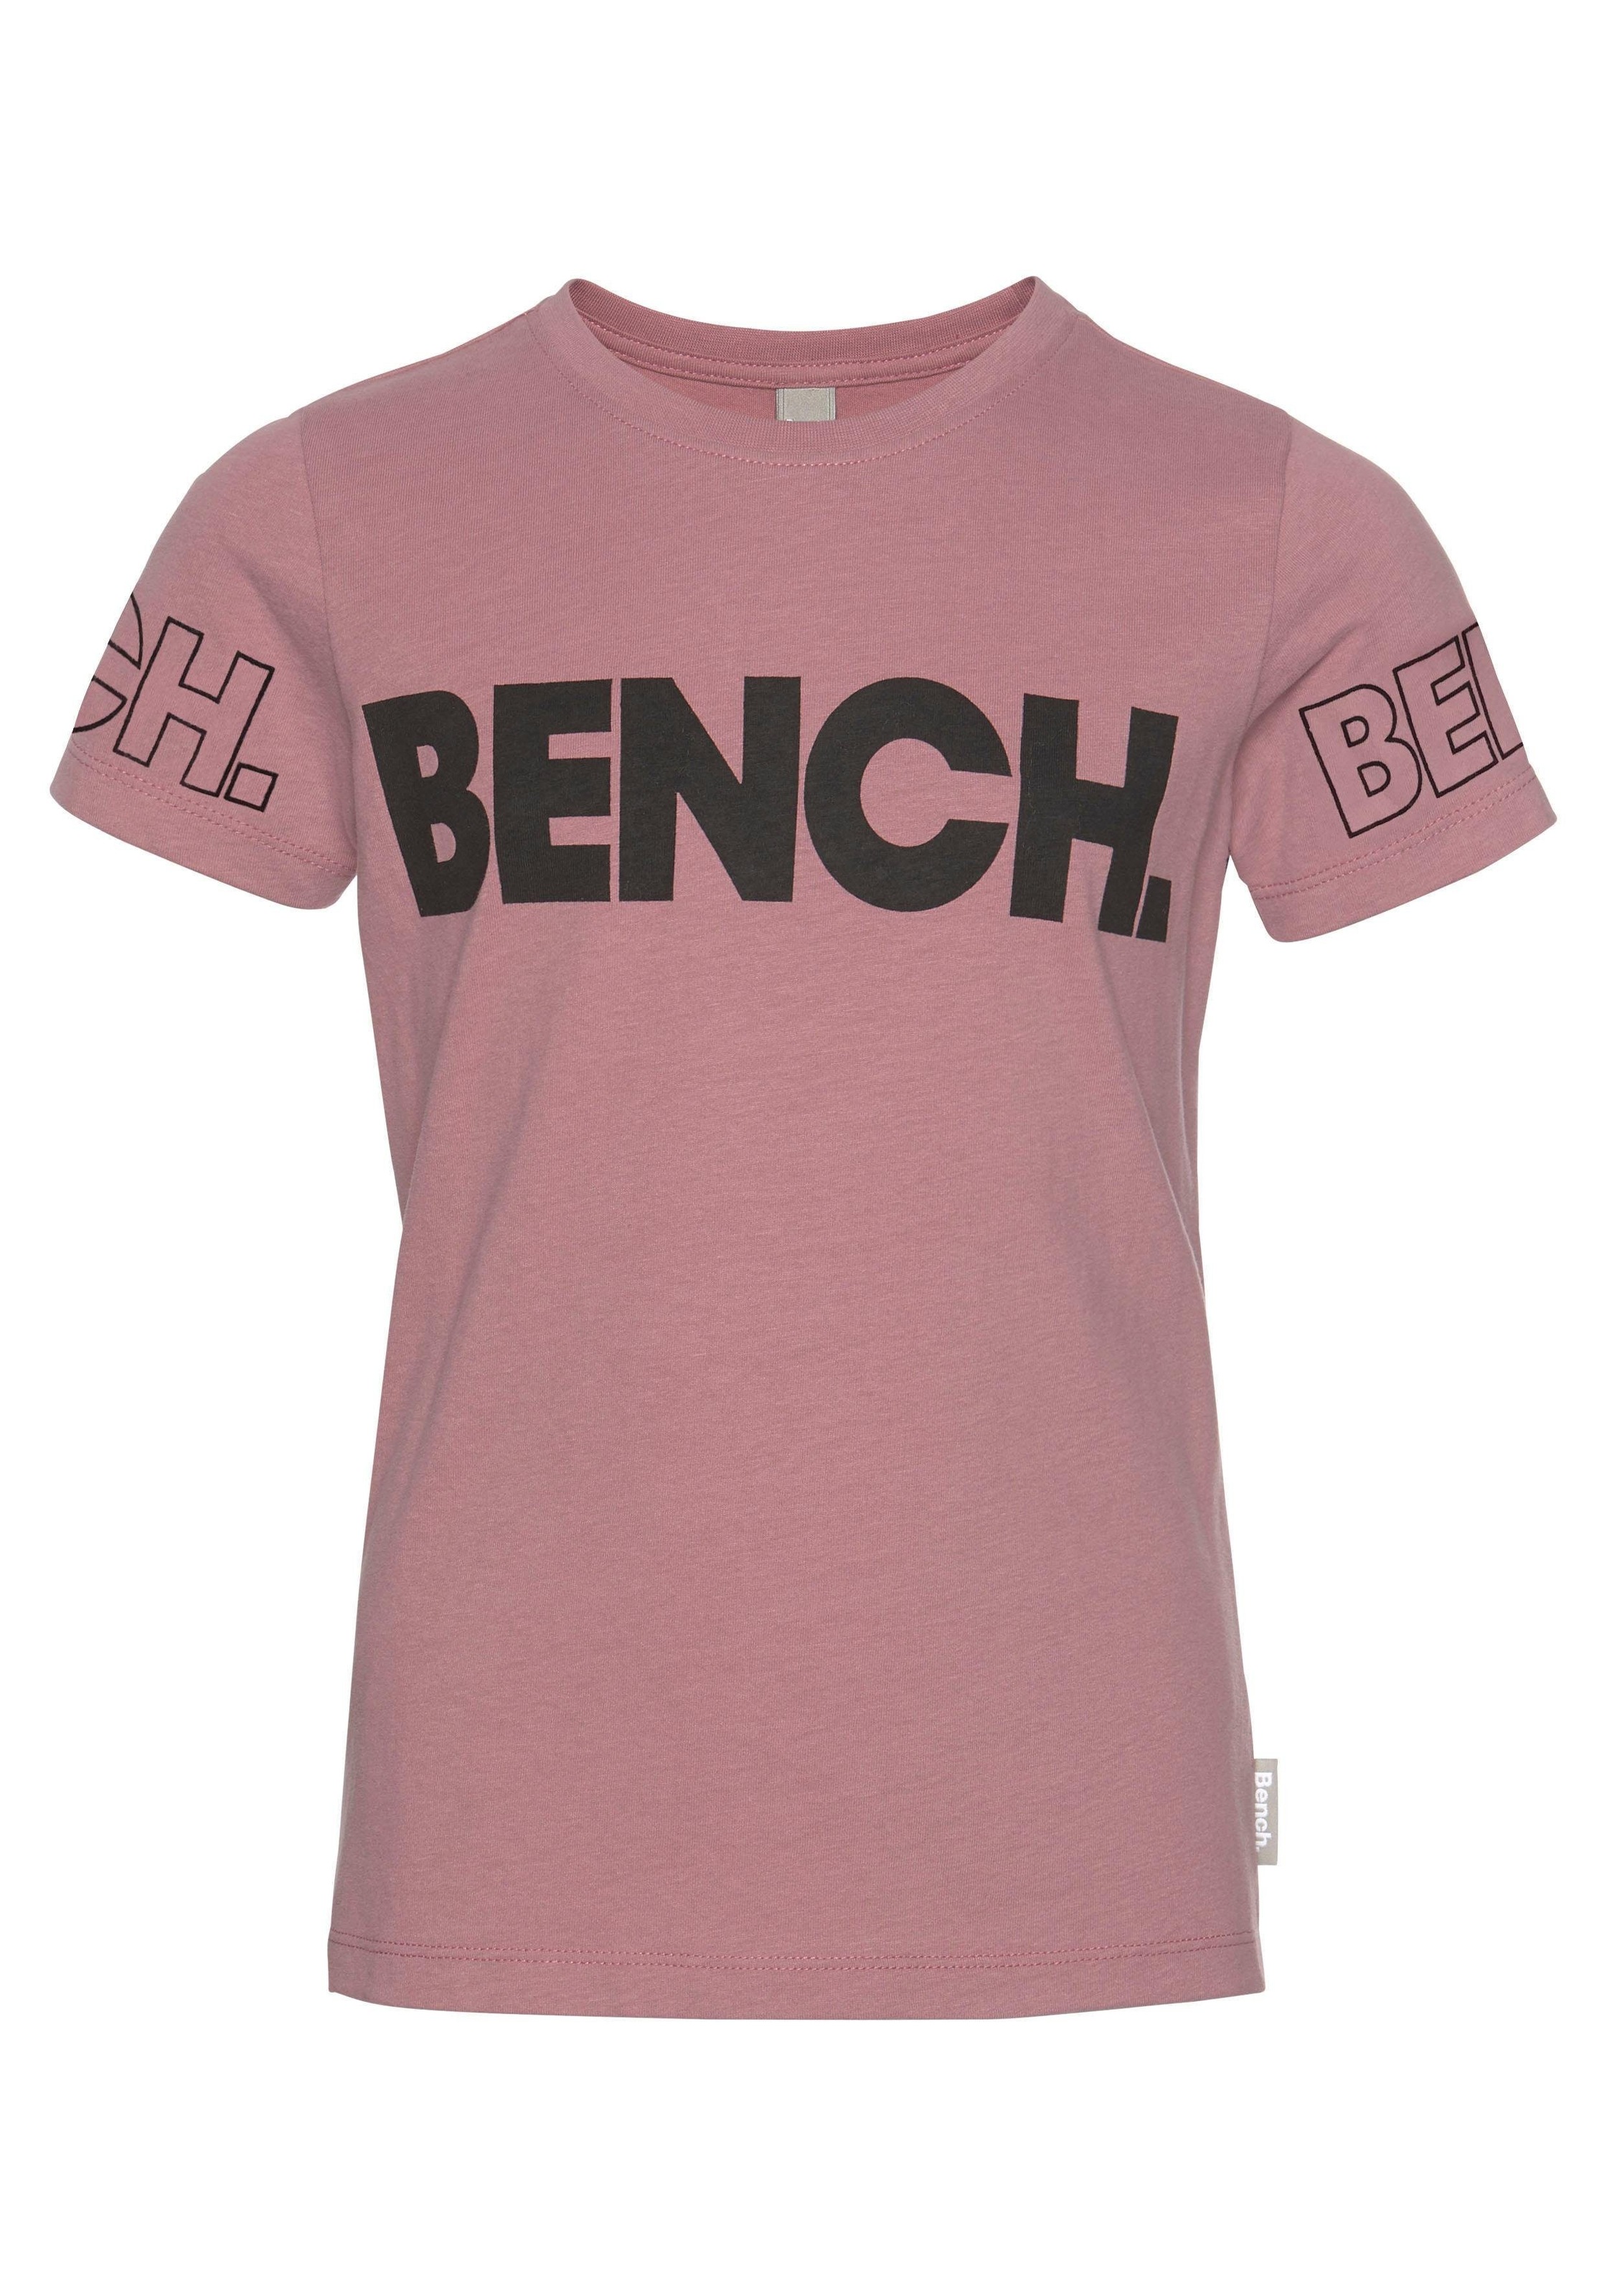 Bench. T-Shirt, Bench-Logo-Drucken mit versandkostenfrei kaufen Modische